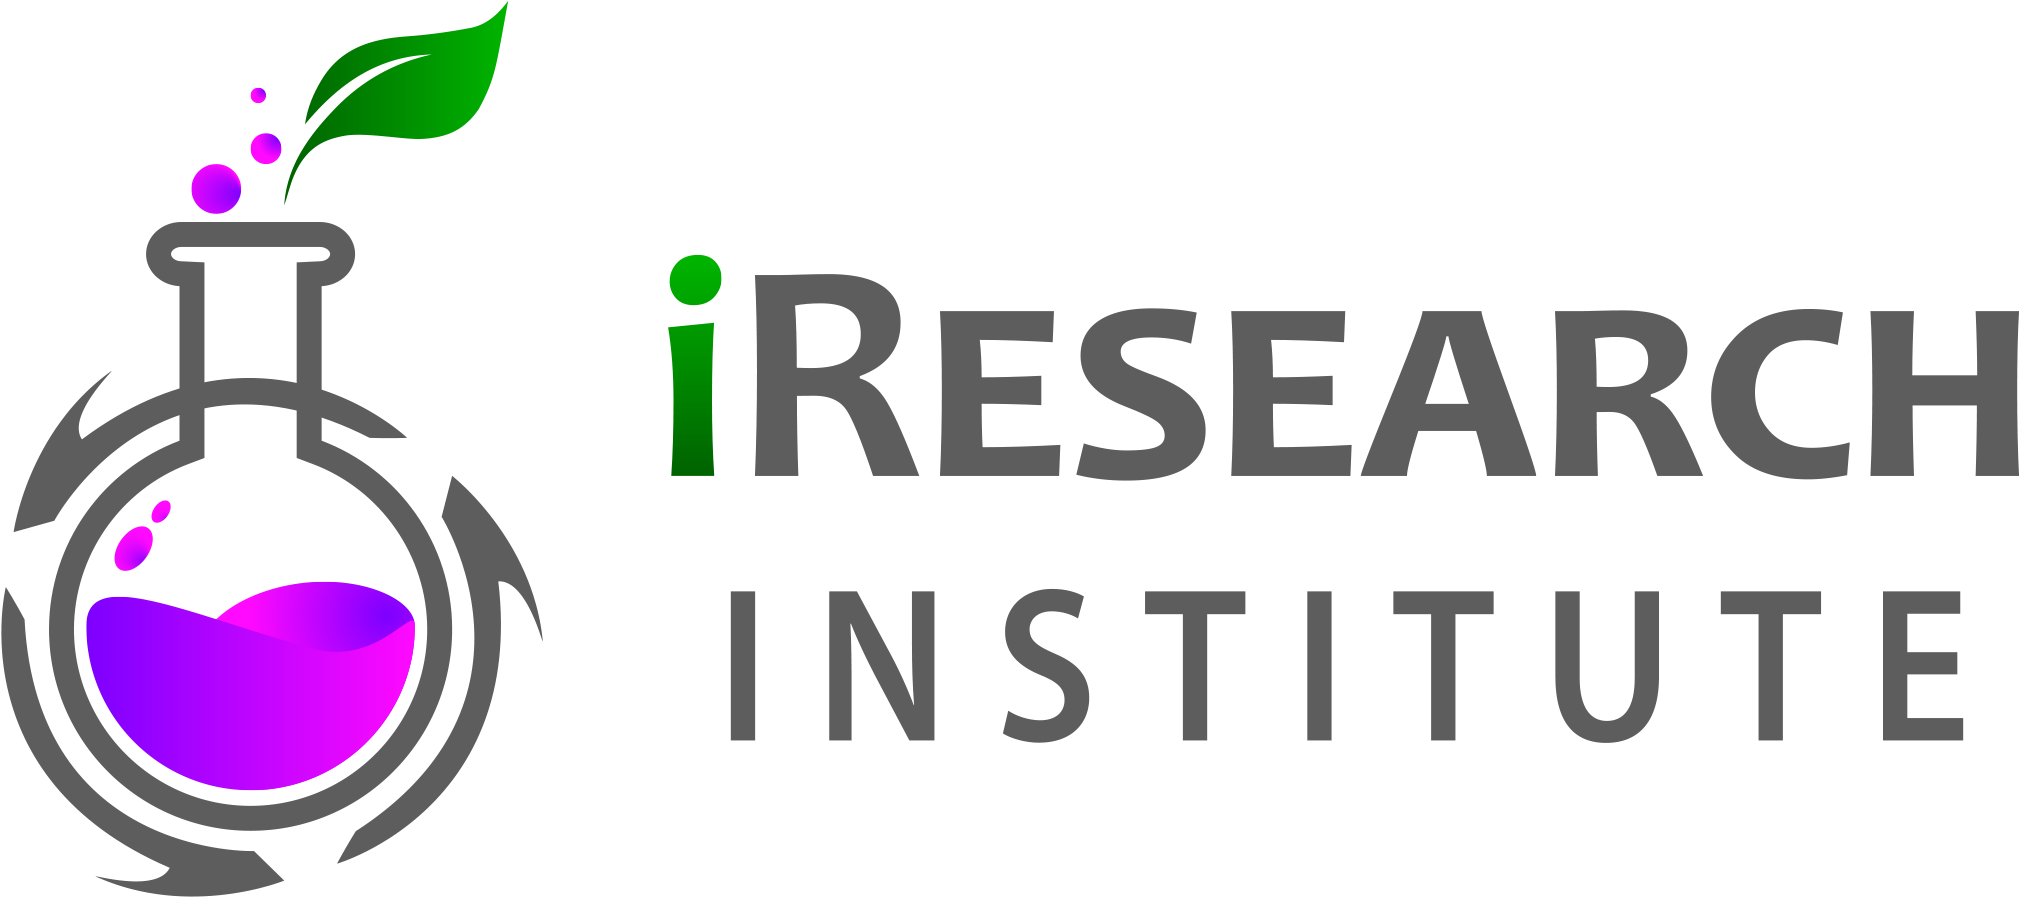 Iresearch Institute High School Science Research Camp - High Institute Logo Design (2060x918)